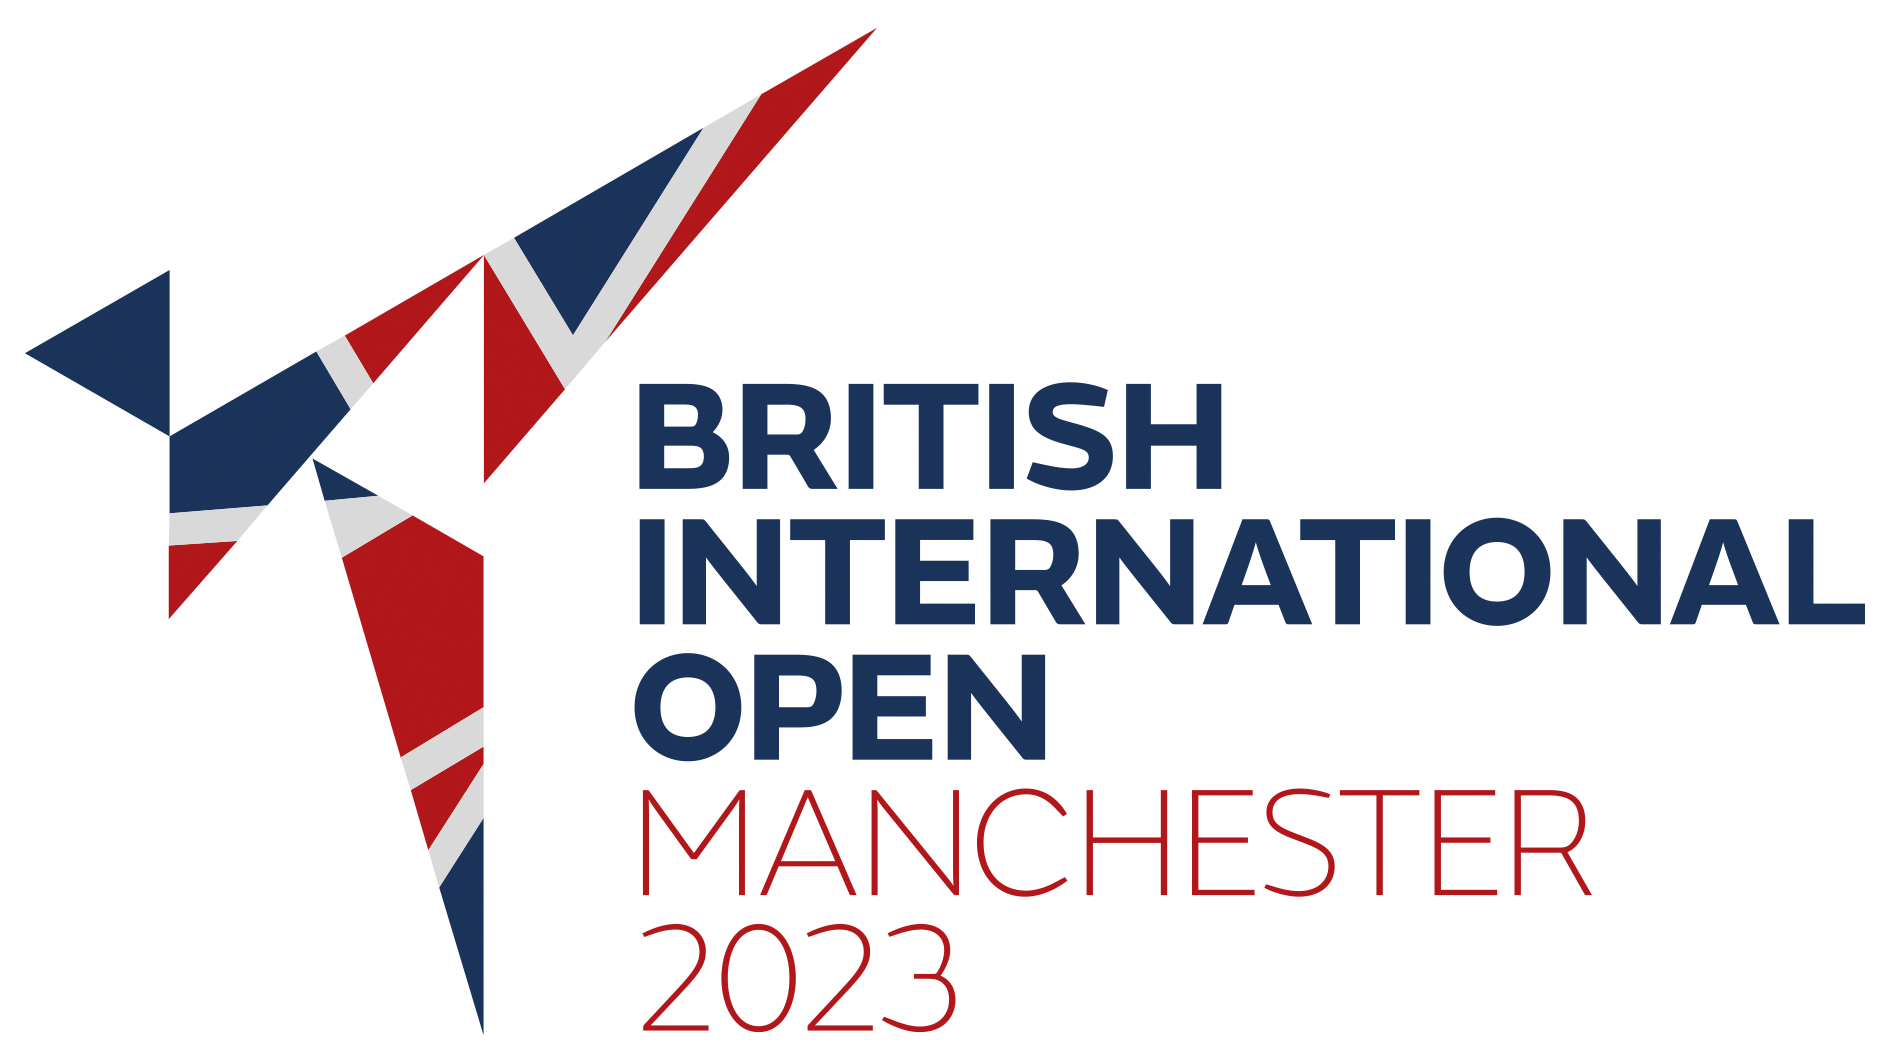 British International Open Manchester 2023